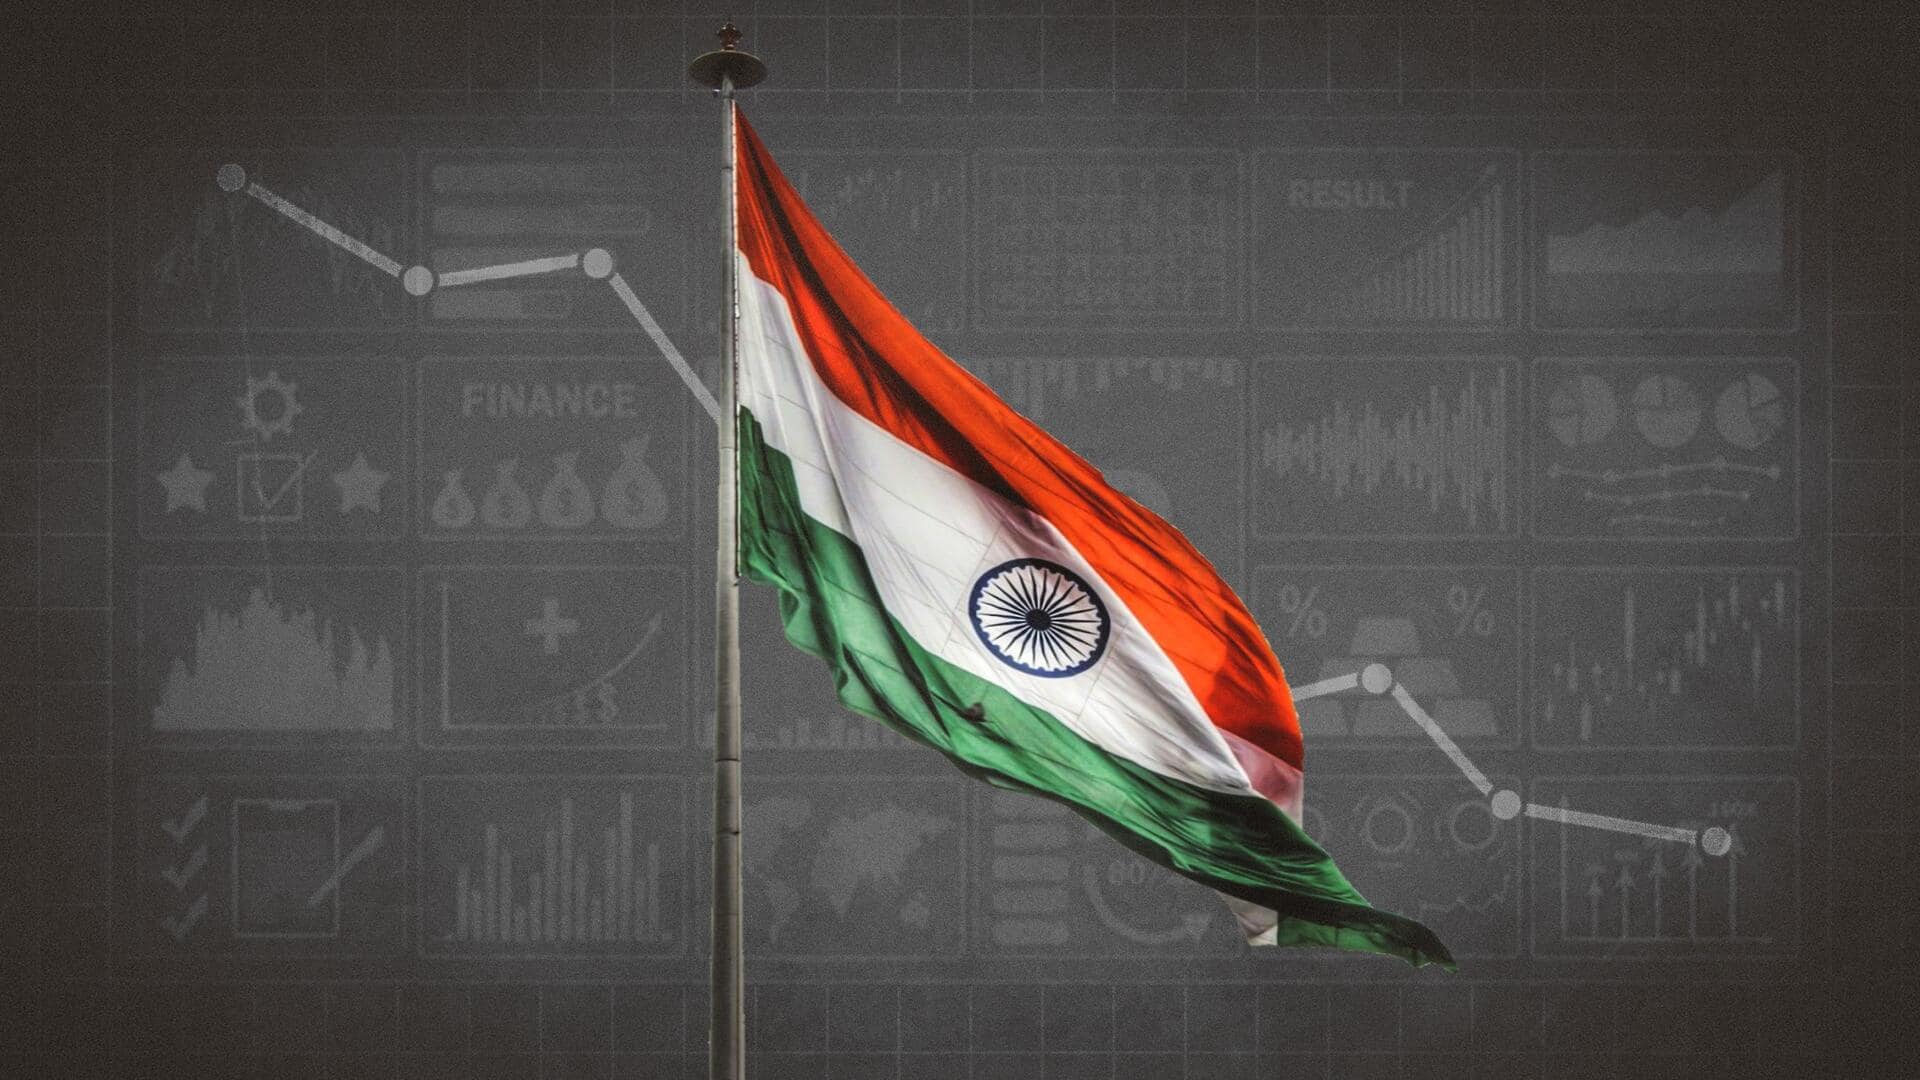 पिछले वित्त वर्ष में 7.2 प्रतिशत रही भारत की GDP विकास दर, अनुमान से अधिक